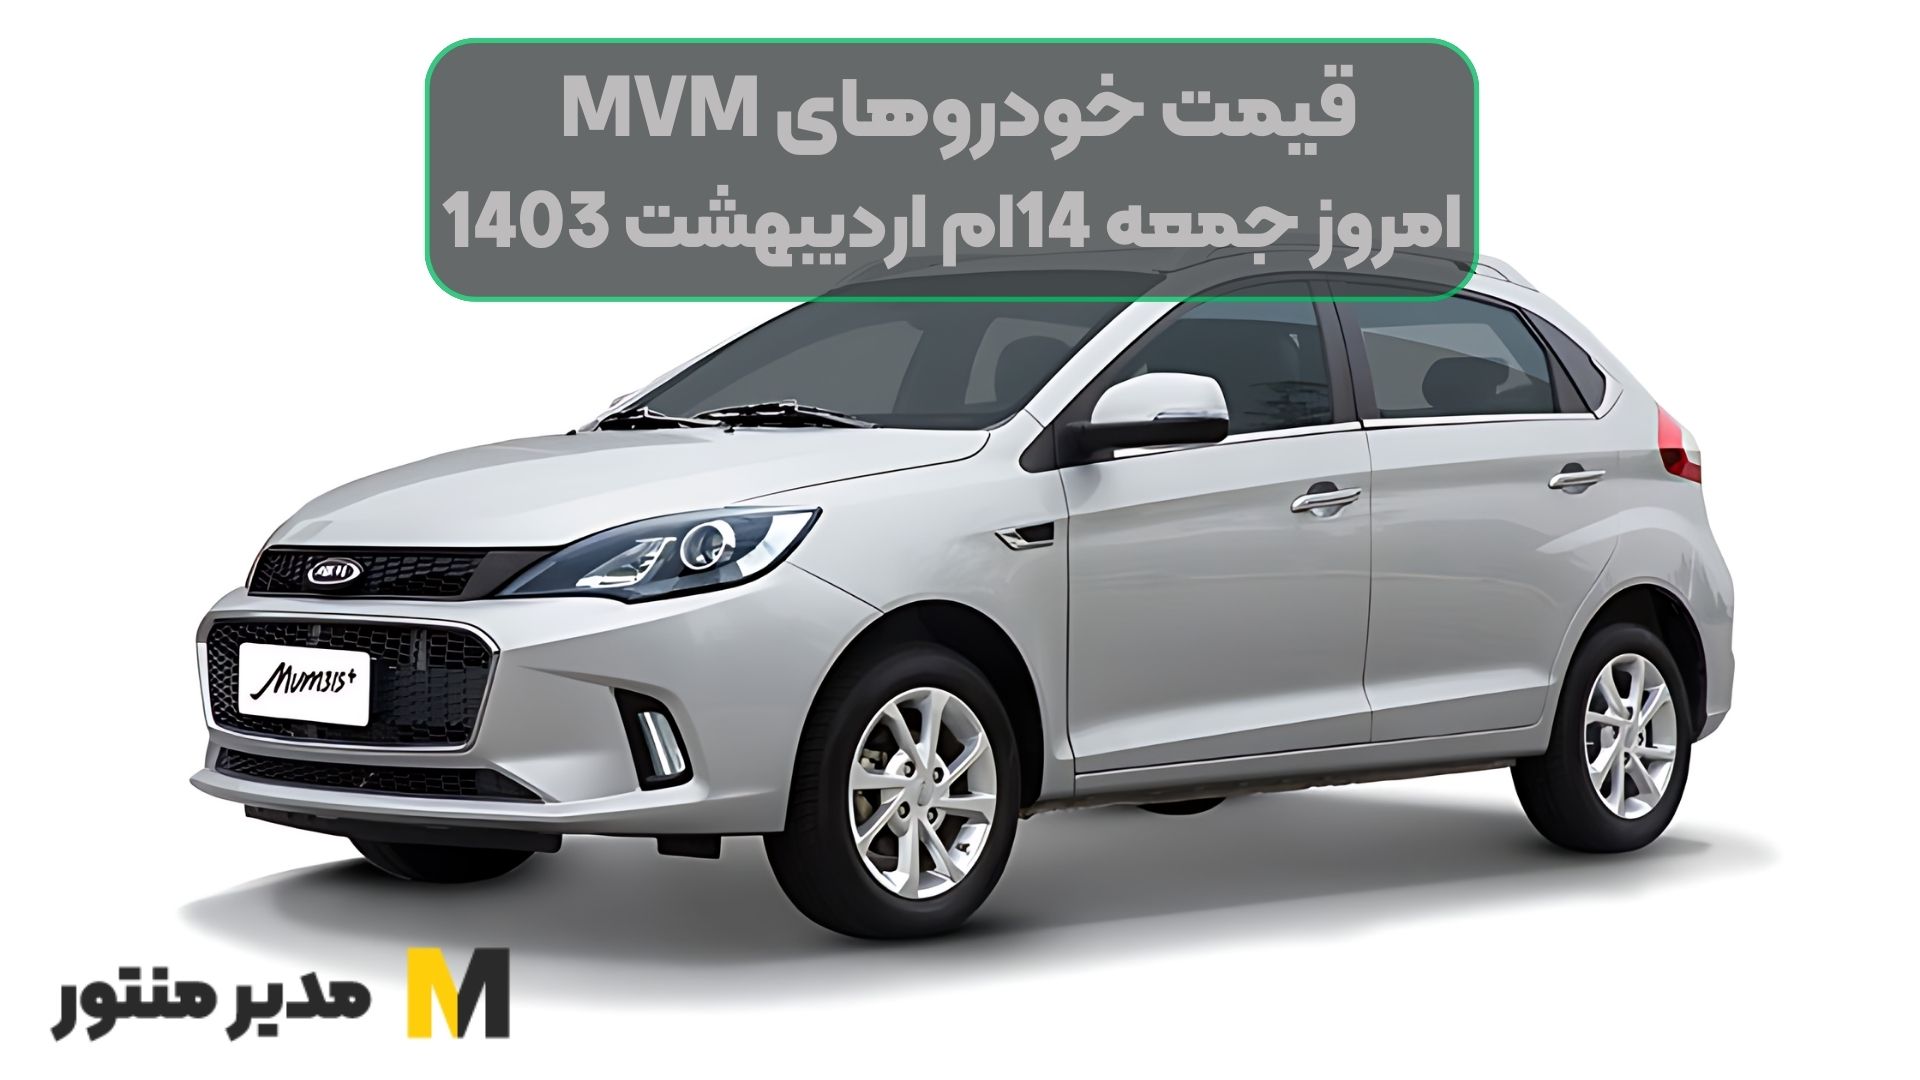 قیمت خودروهای MVM امروز جمعه 14ام اردیبهشت 1403